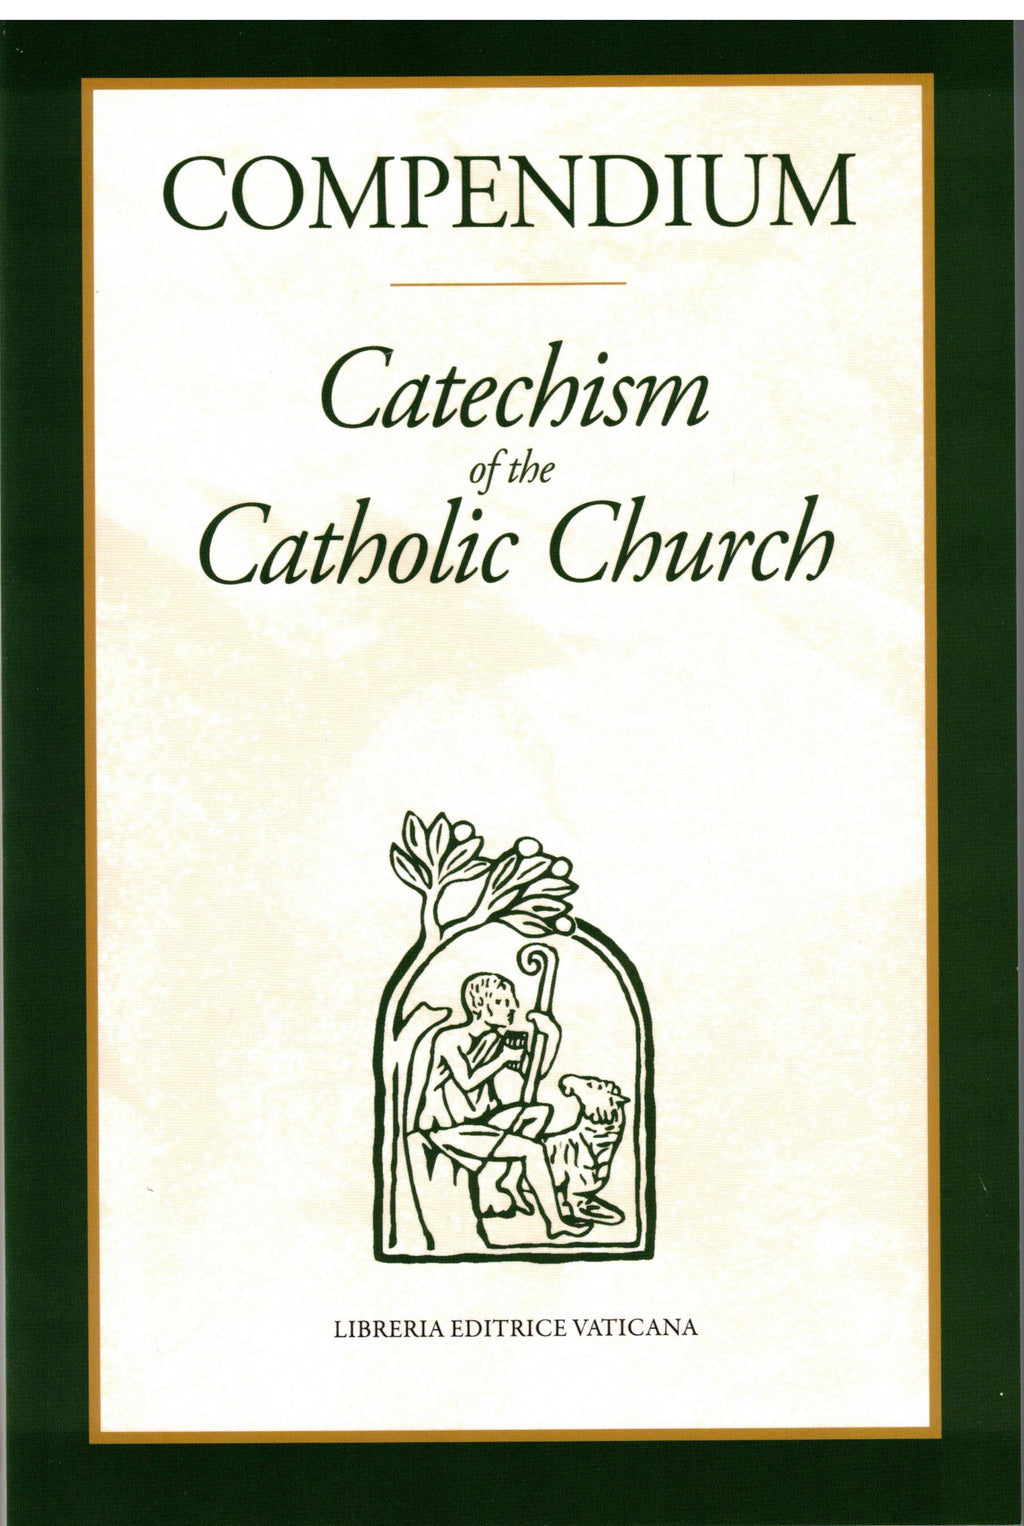 COMPENDIUM CATHECHISM